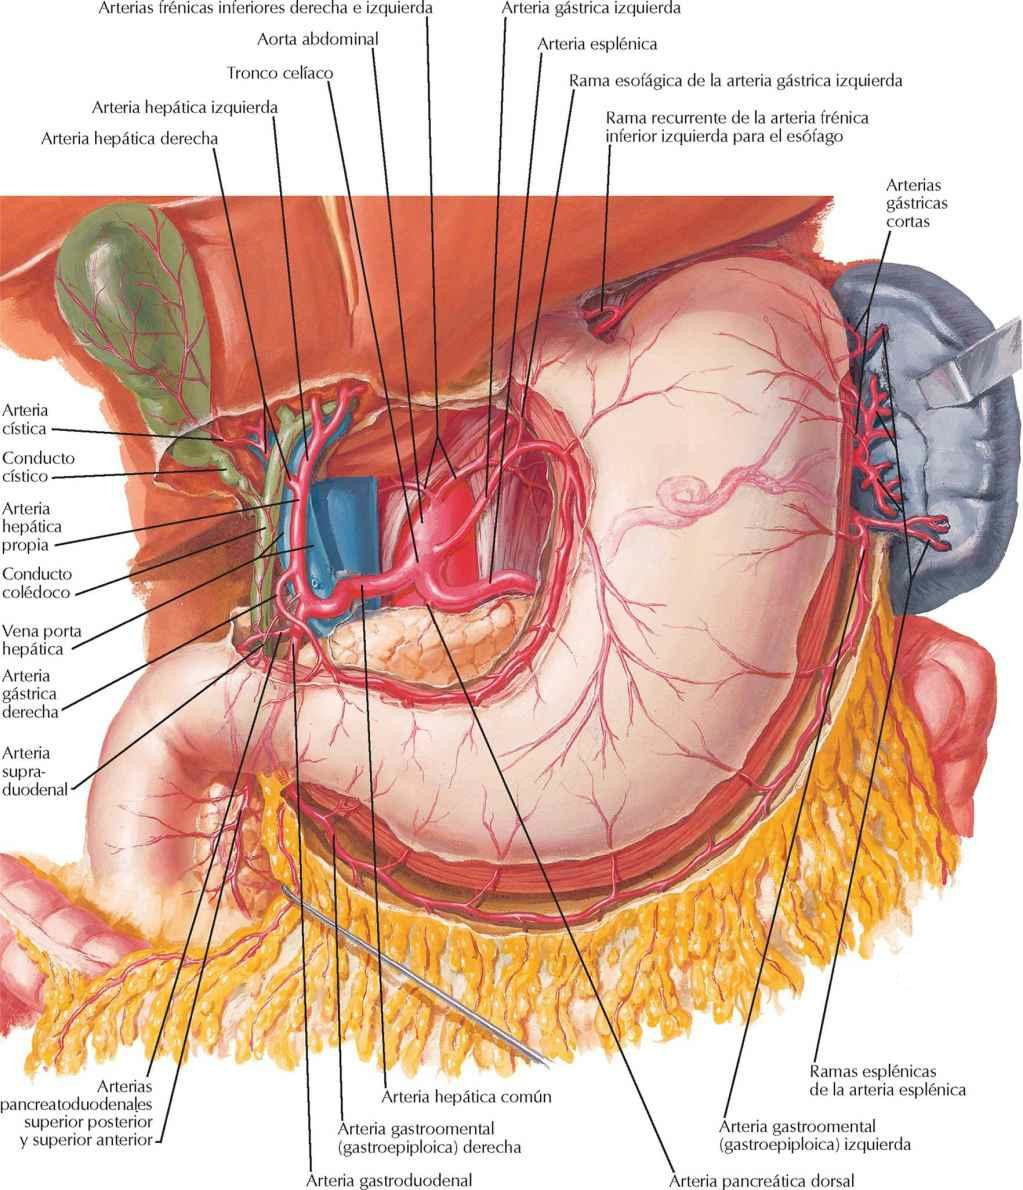 Arterias del estómago, hígado y bazo